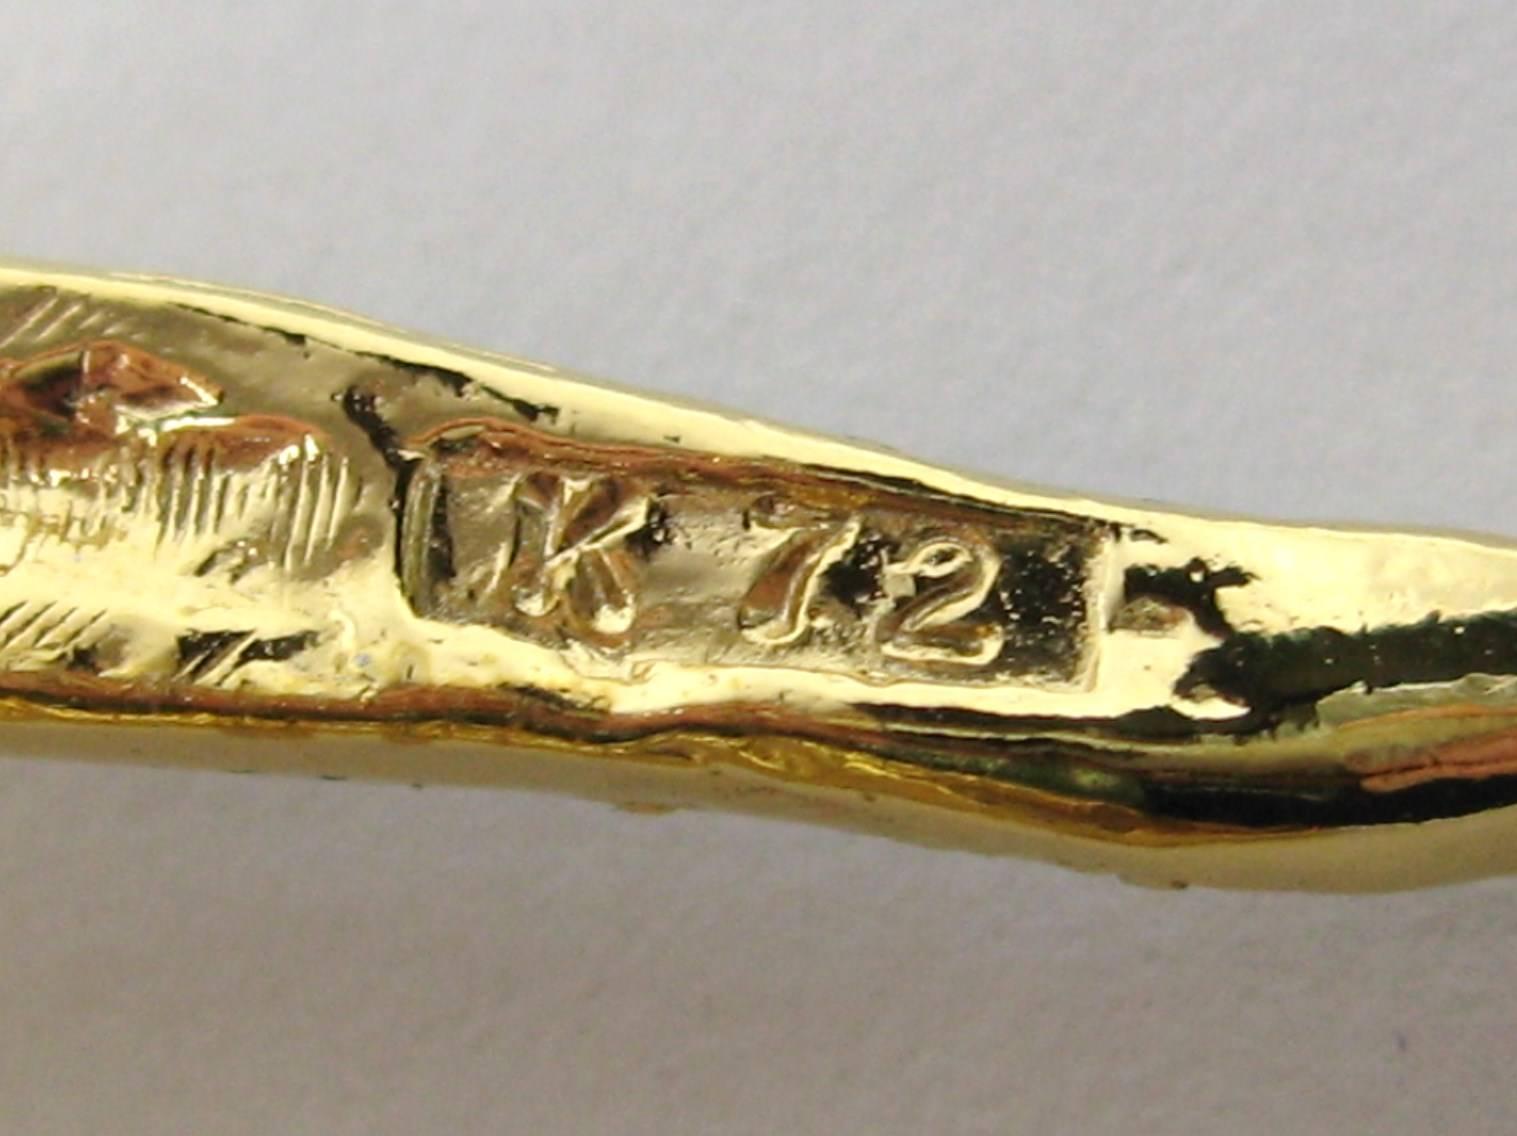 Yosca Serpent Snake Brooch pin New, Never worn 1980s Gold Gilt  1